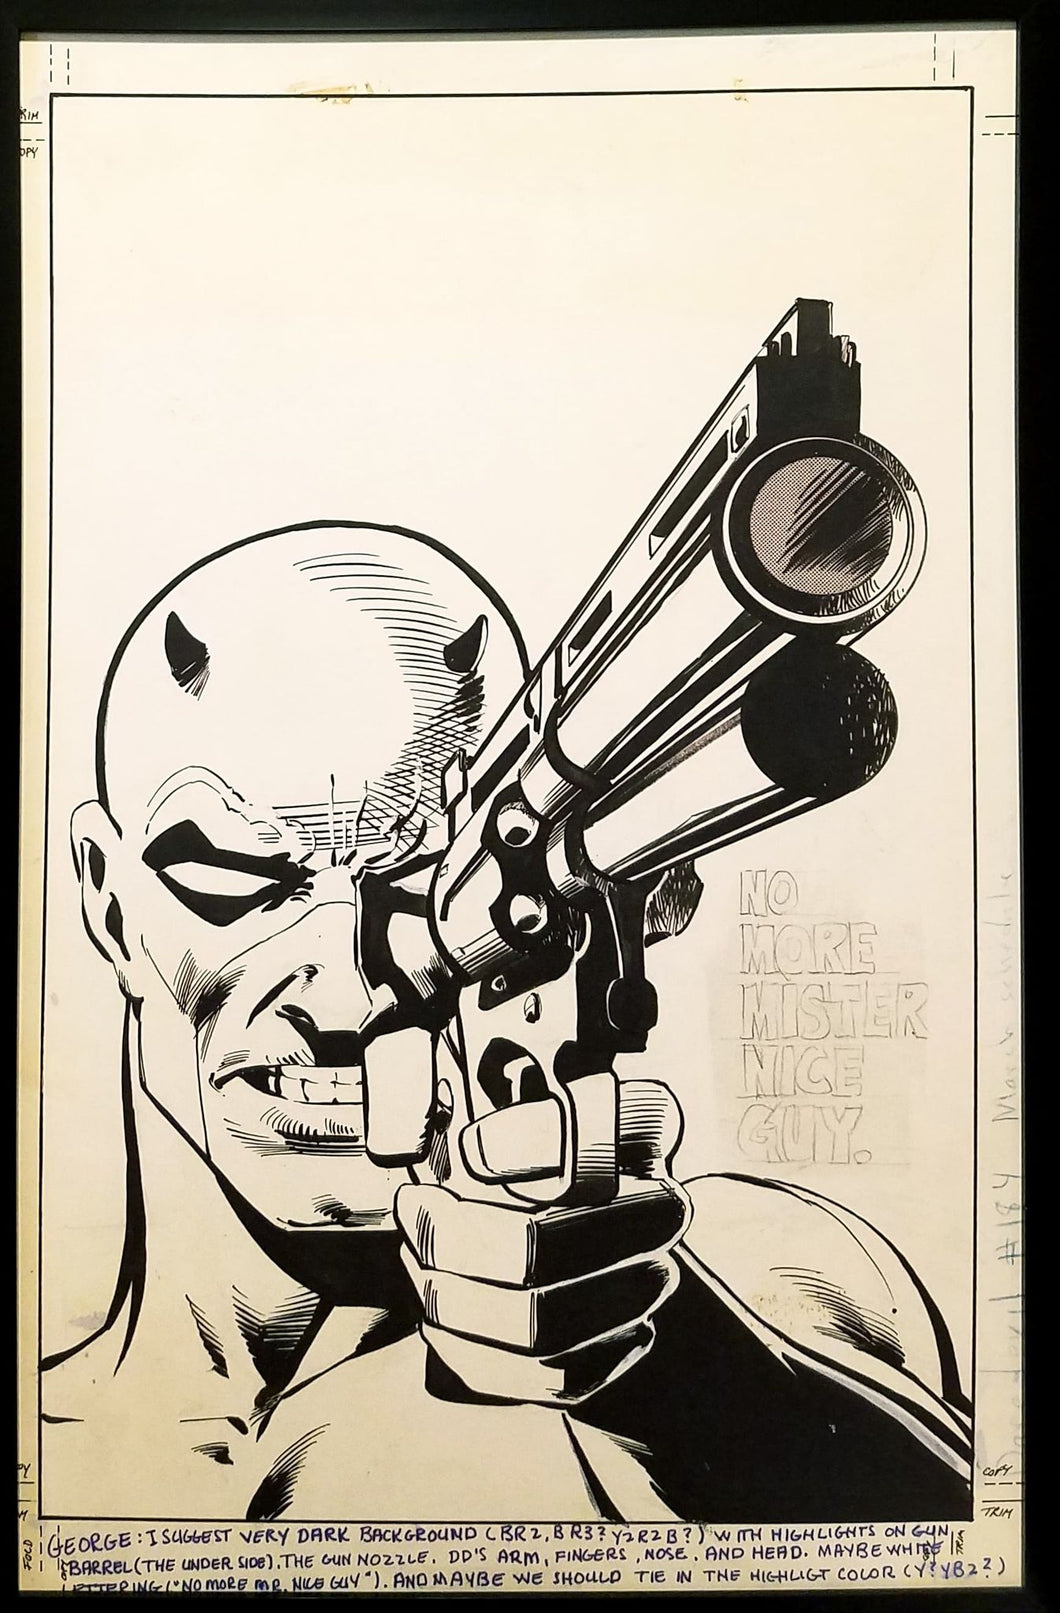 Daredevil #184 by Frank Miller 11x17 FRAMED Original Art Poster Marvel Comics